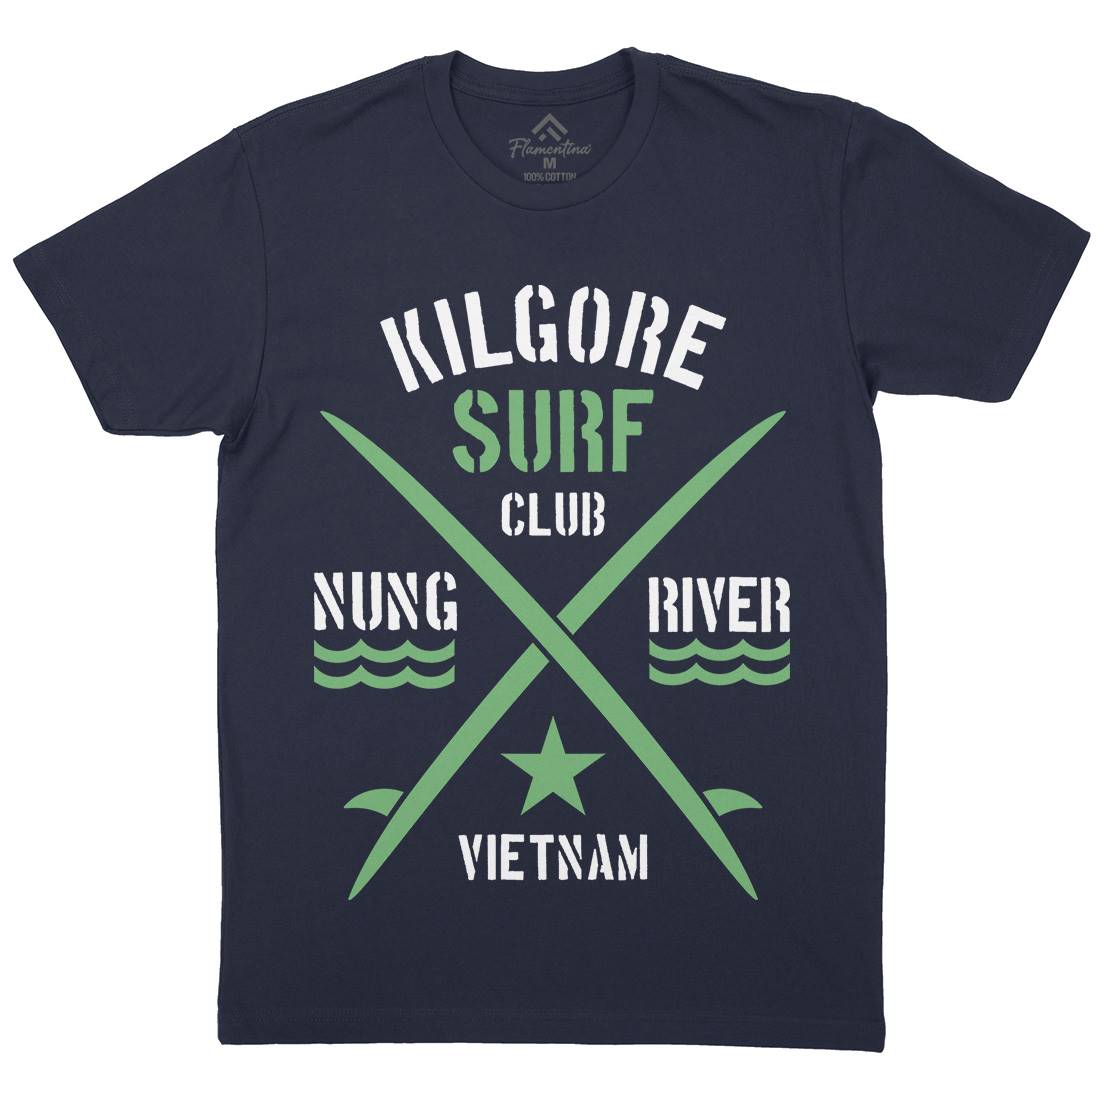 Kilgore Club Mens Organic Crew Neck T-Shirt Surf D234